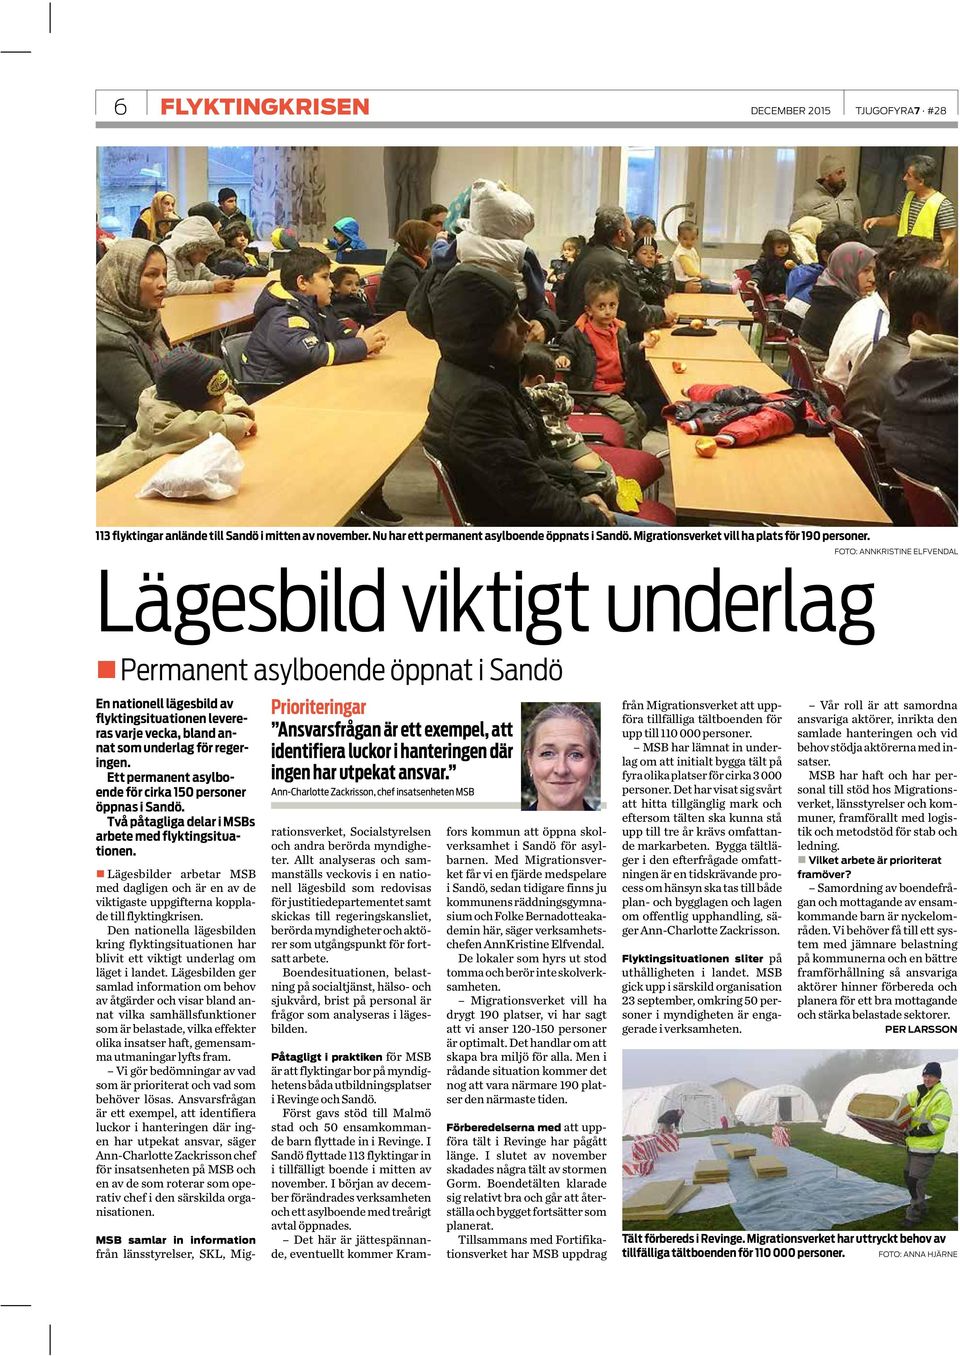 Ett permanent asylboende för cirka 150 personer öppnas i Sandö. Två påtagliga delar i MSBs arbete med flyktingsituationen.